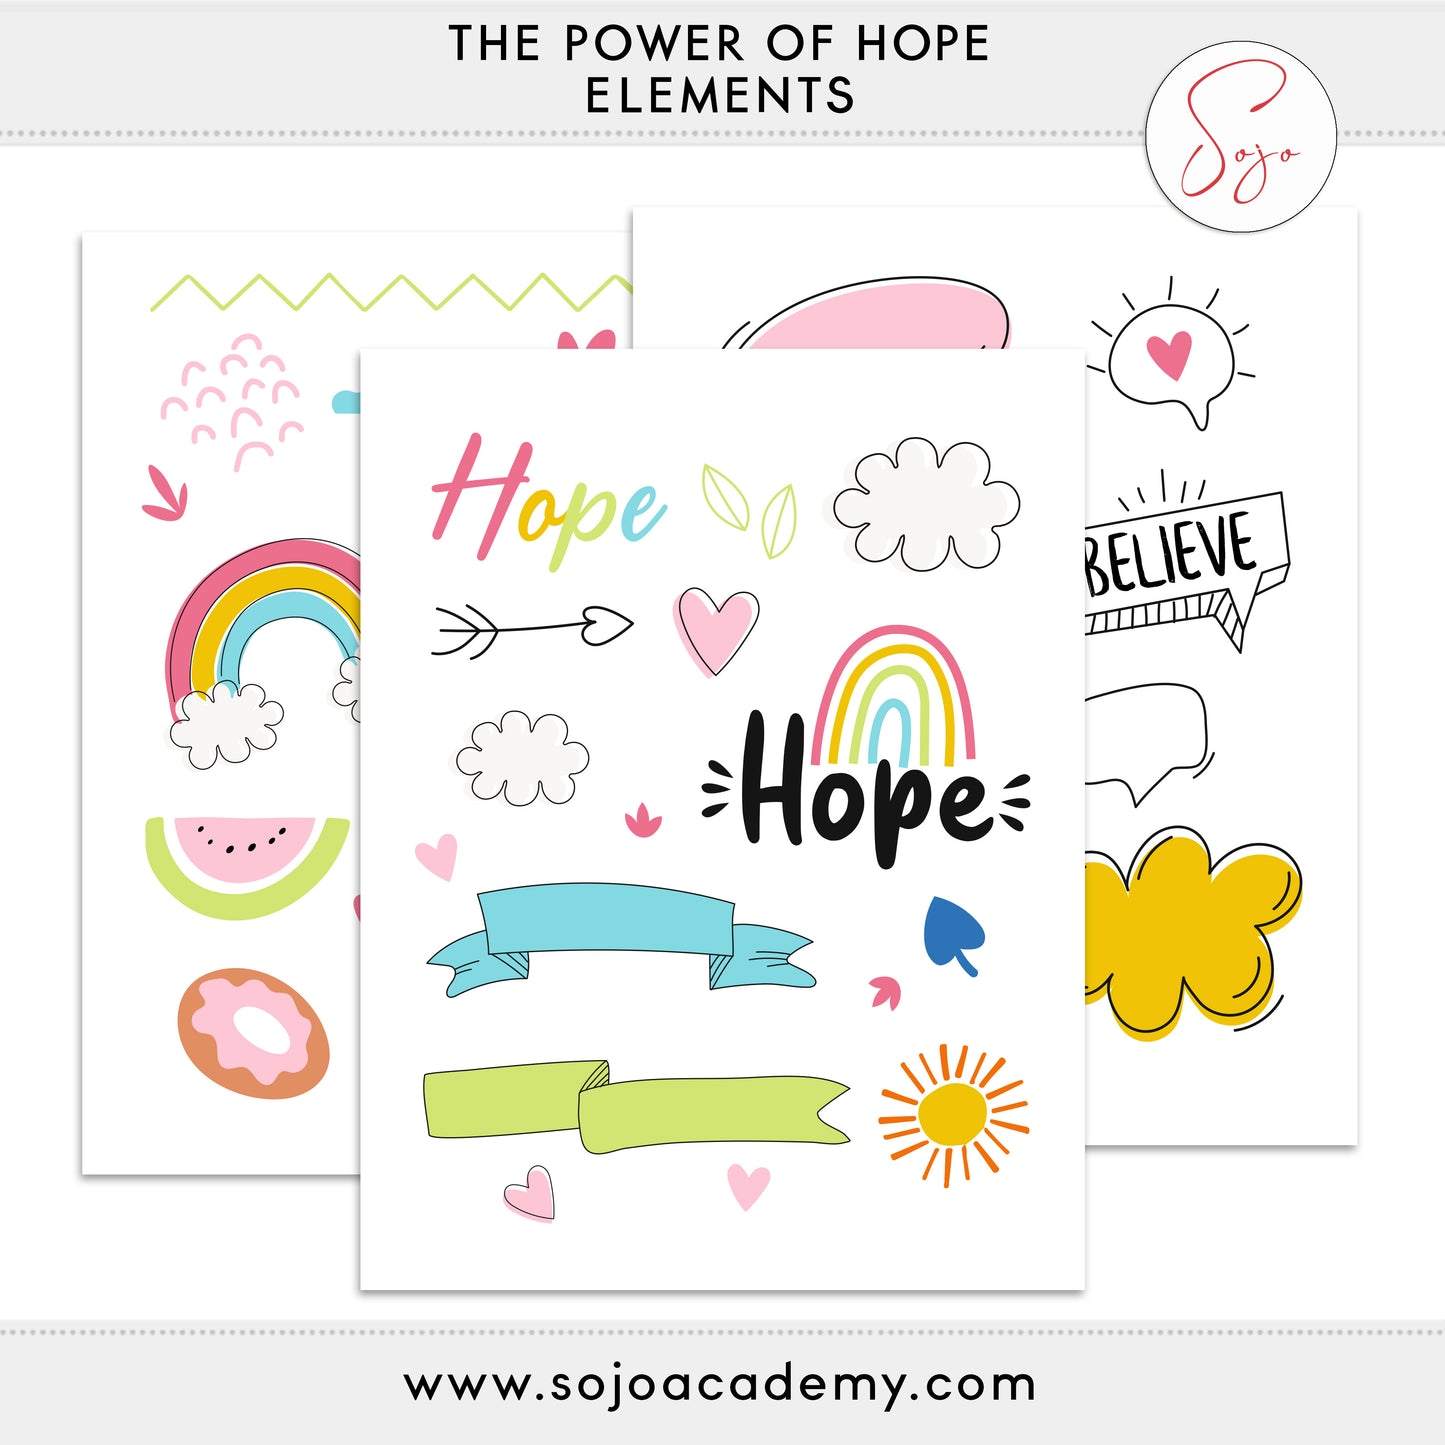 Power of Hope Bible Journaling Kit